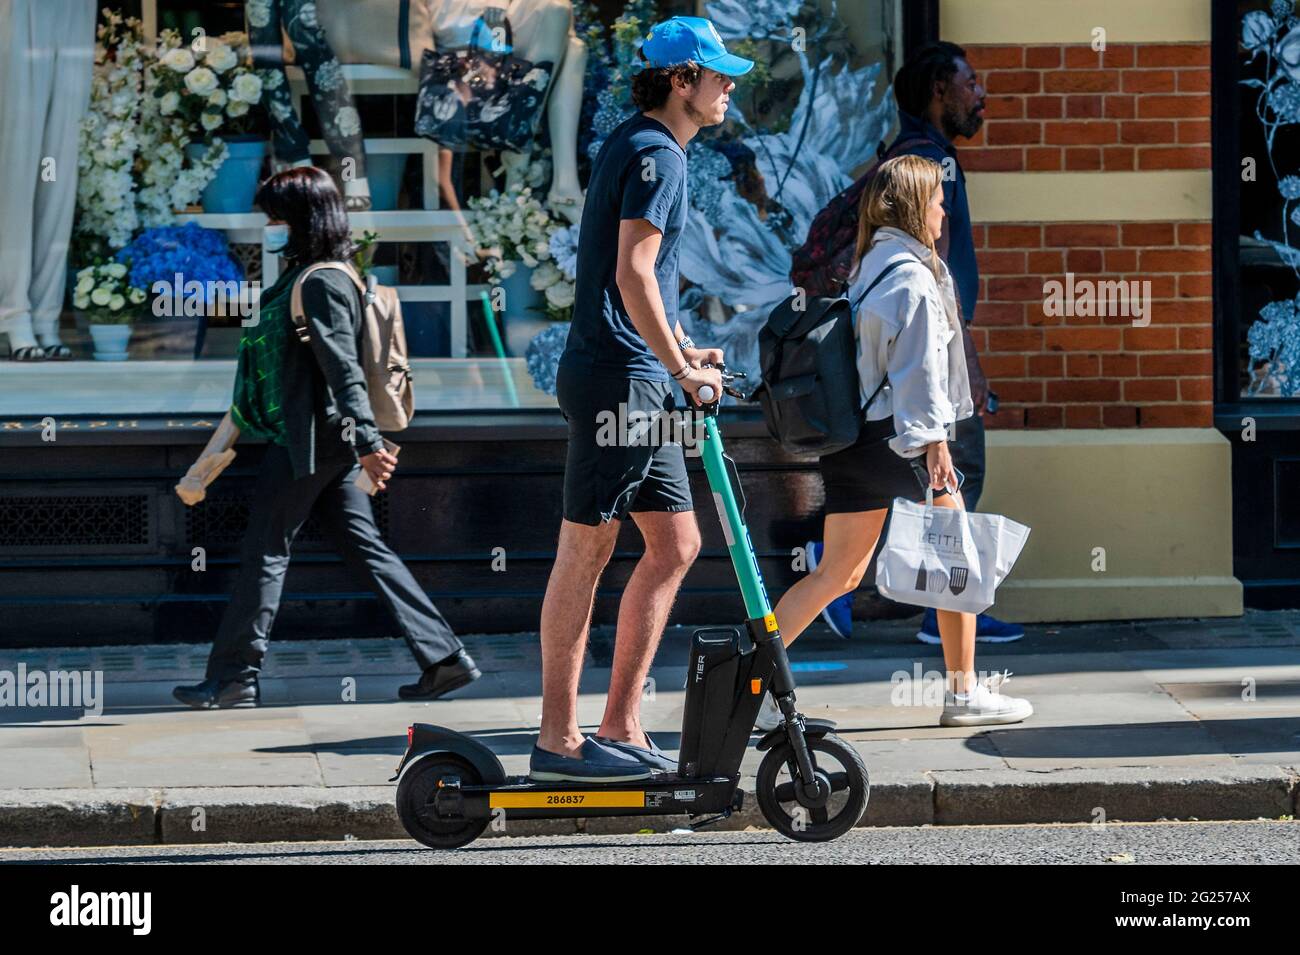 Londres, Royaume-Uni. 8 juin 2021. Des scooters électriques (e-trottinettes)  sont maintenant disponibles à la location dans un petit nombre de quartiers  de Londres. C'est la seule façon de conduire légalement un e-scooter